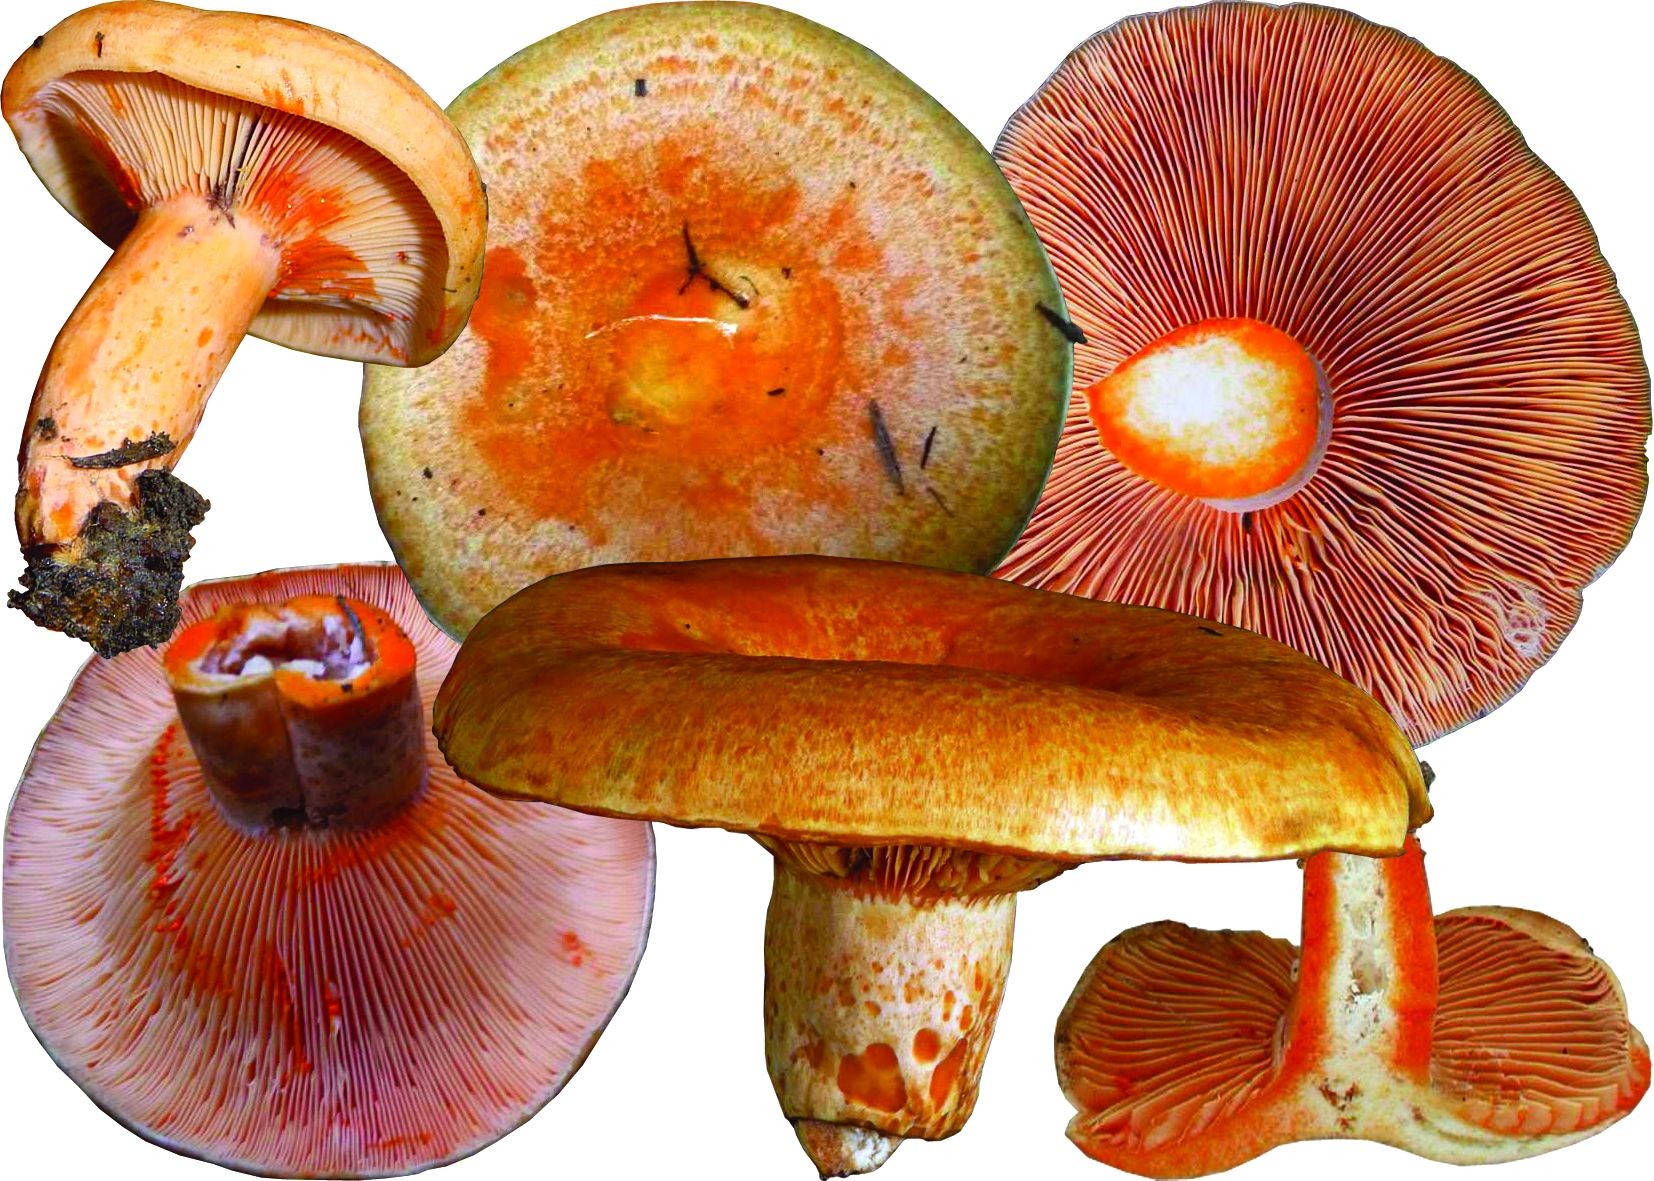 Покажи рыжика. Млечник Рыжик гриб. Рыжик Сосновый/Боровой (Lactarius deliciosus);. Lactarius salmonicolor Рыжик. Рыжики пластинчатые грибы.